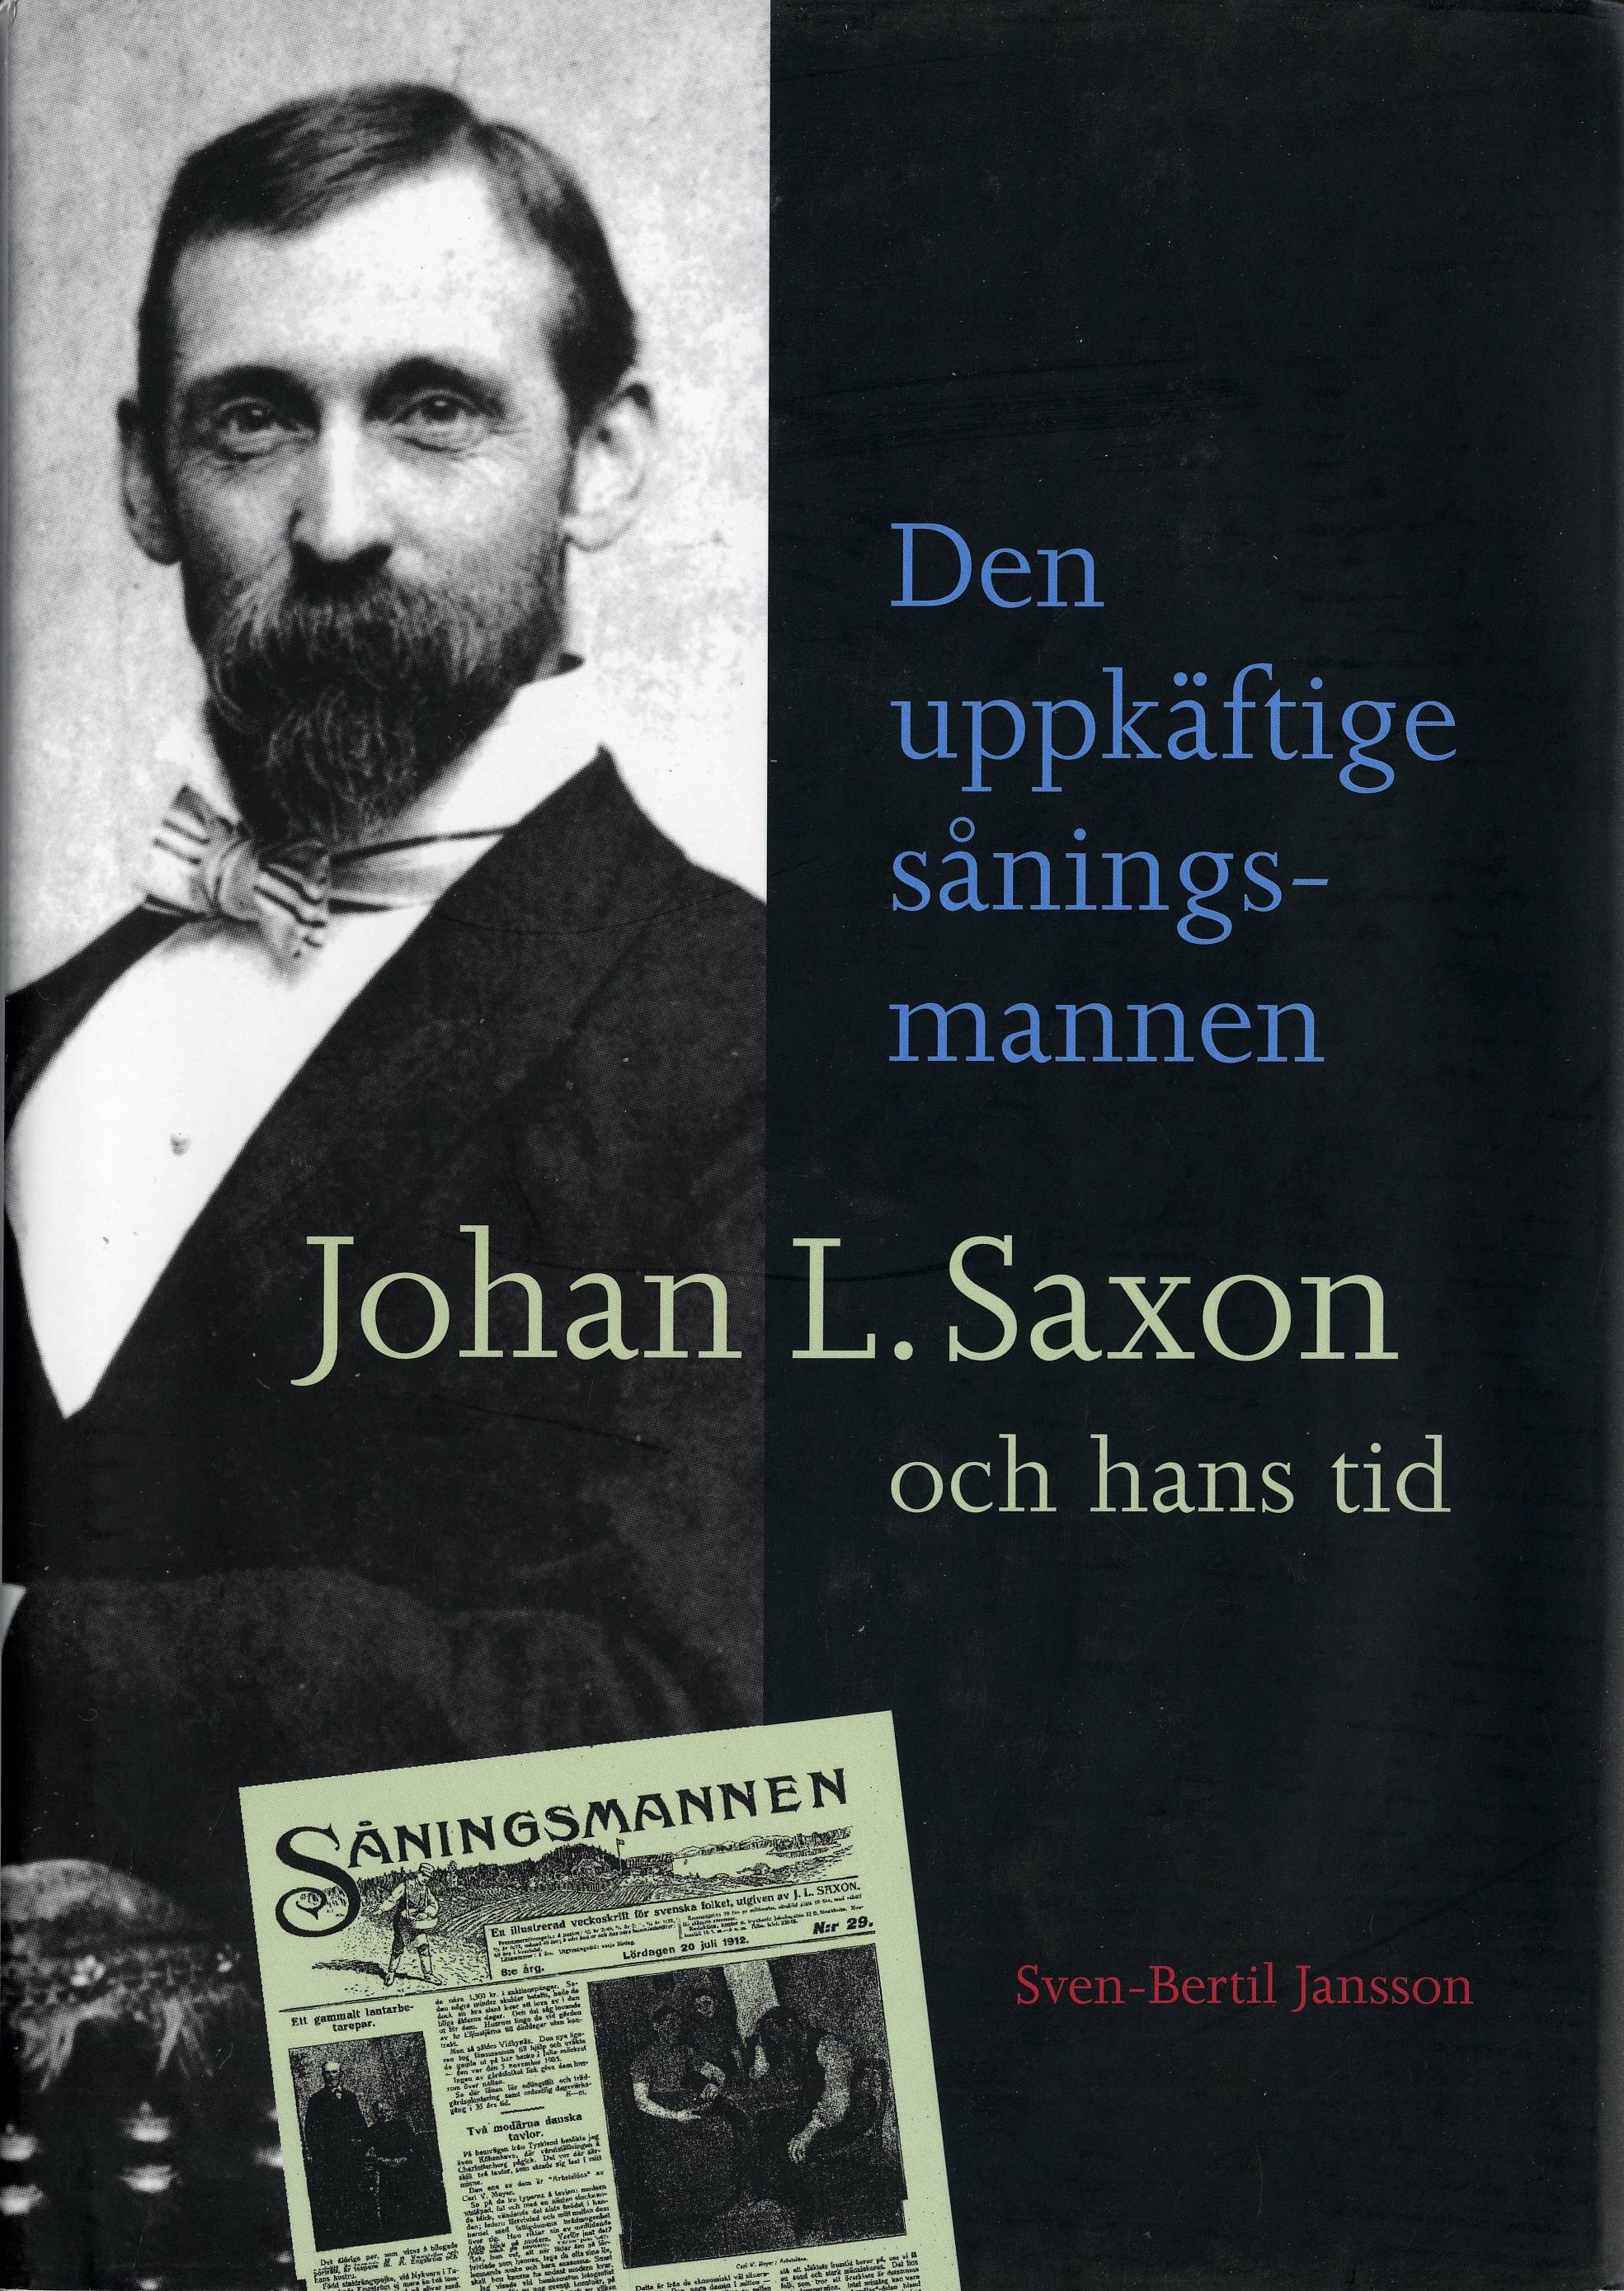 Den uppkäftige såningsmannen. Johan L. Saxon och hans tid